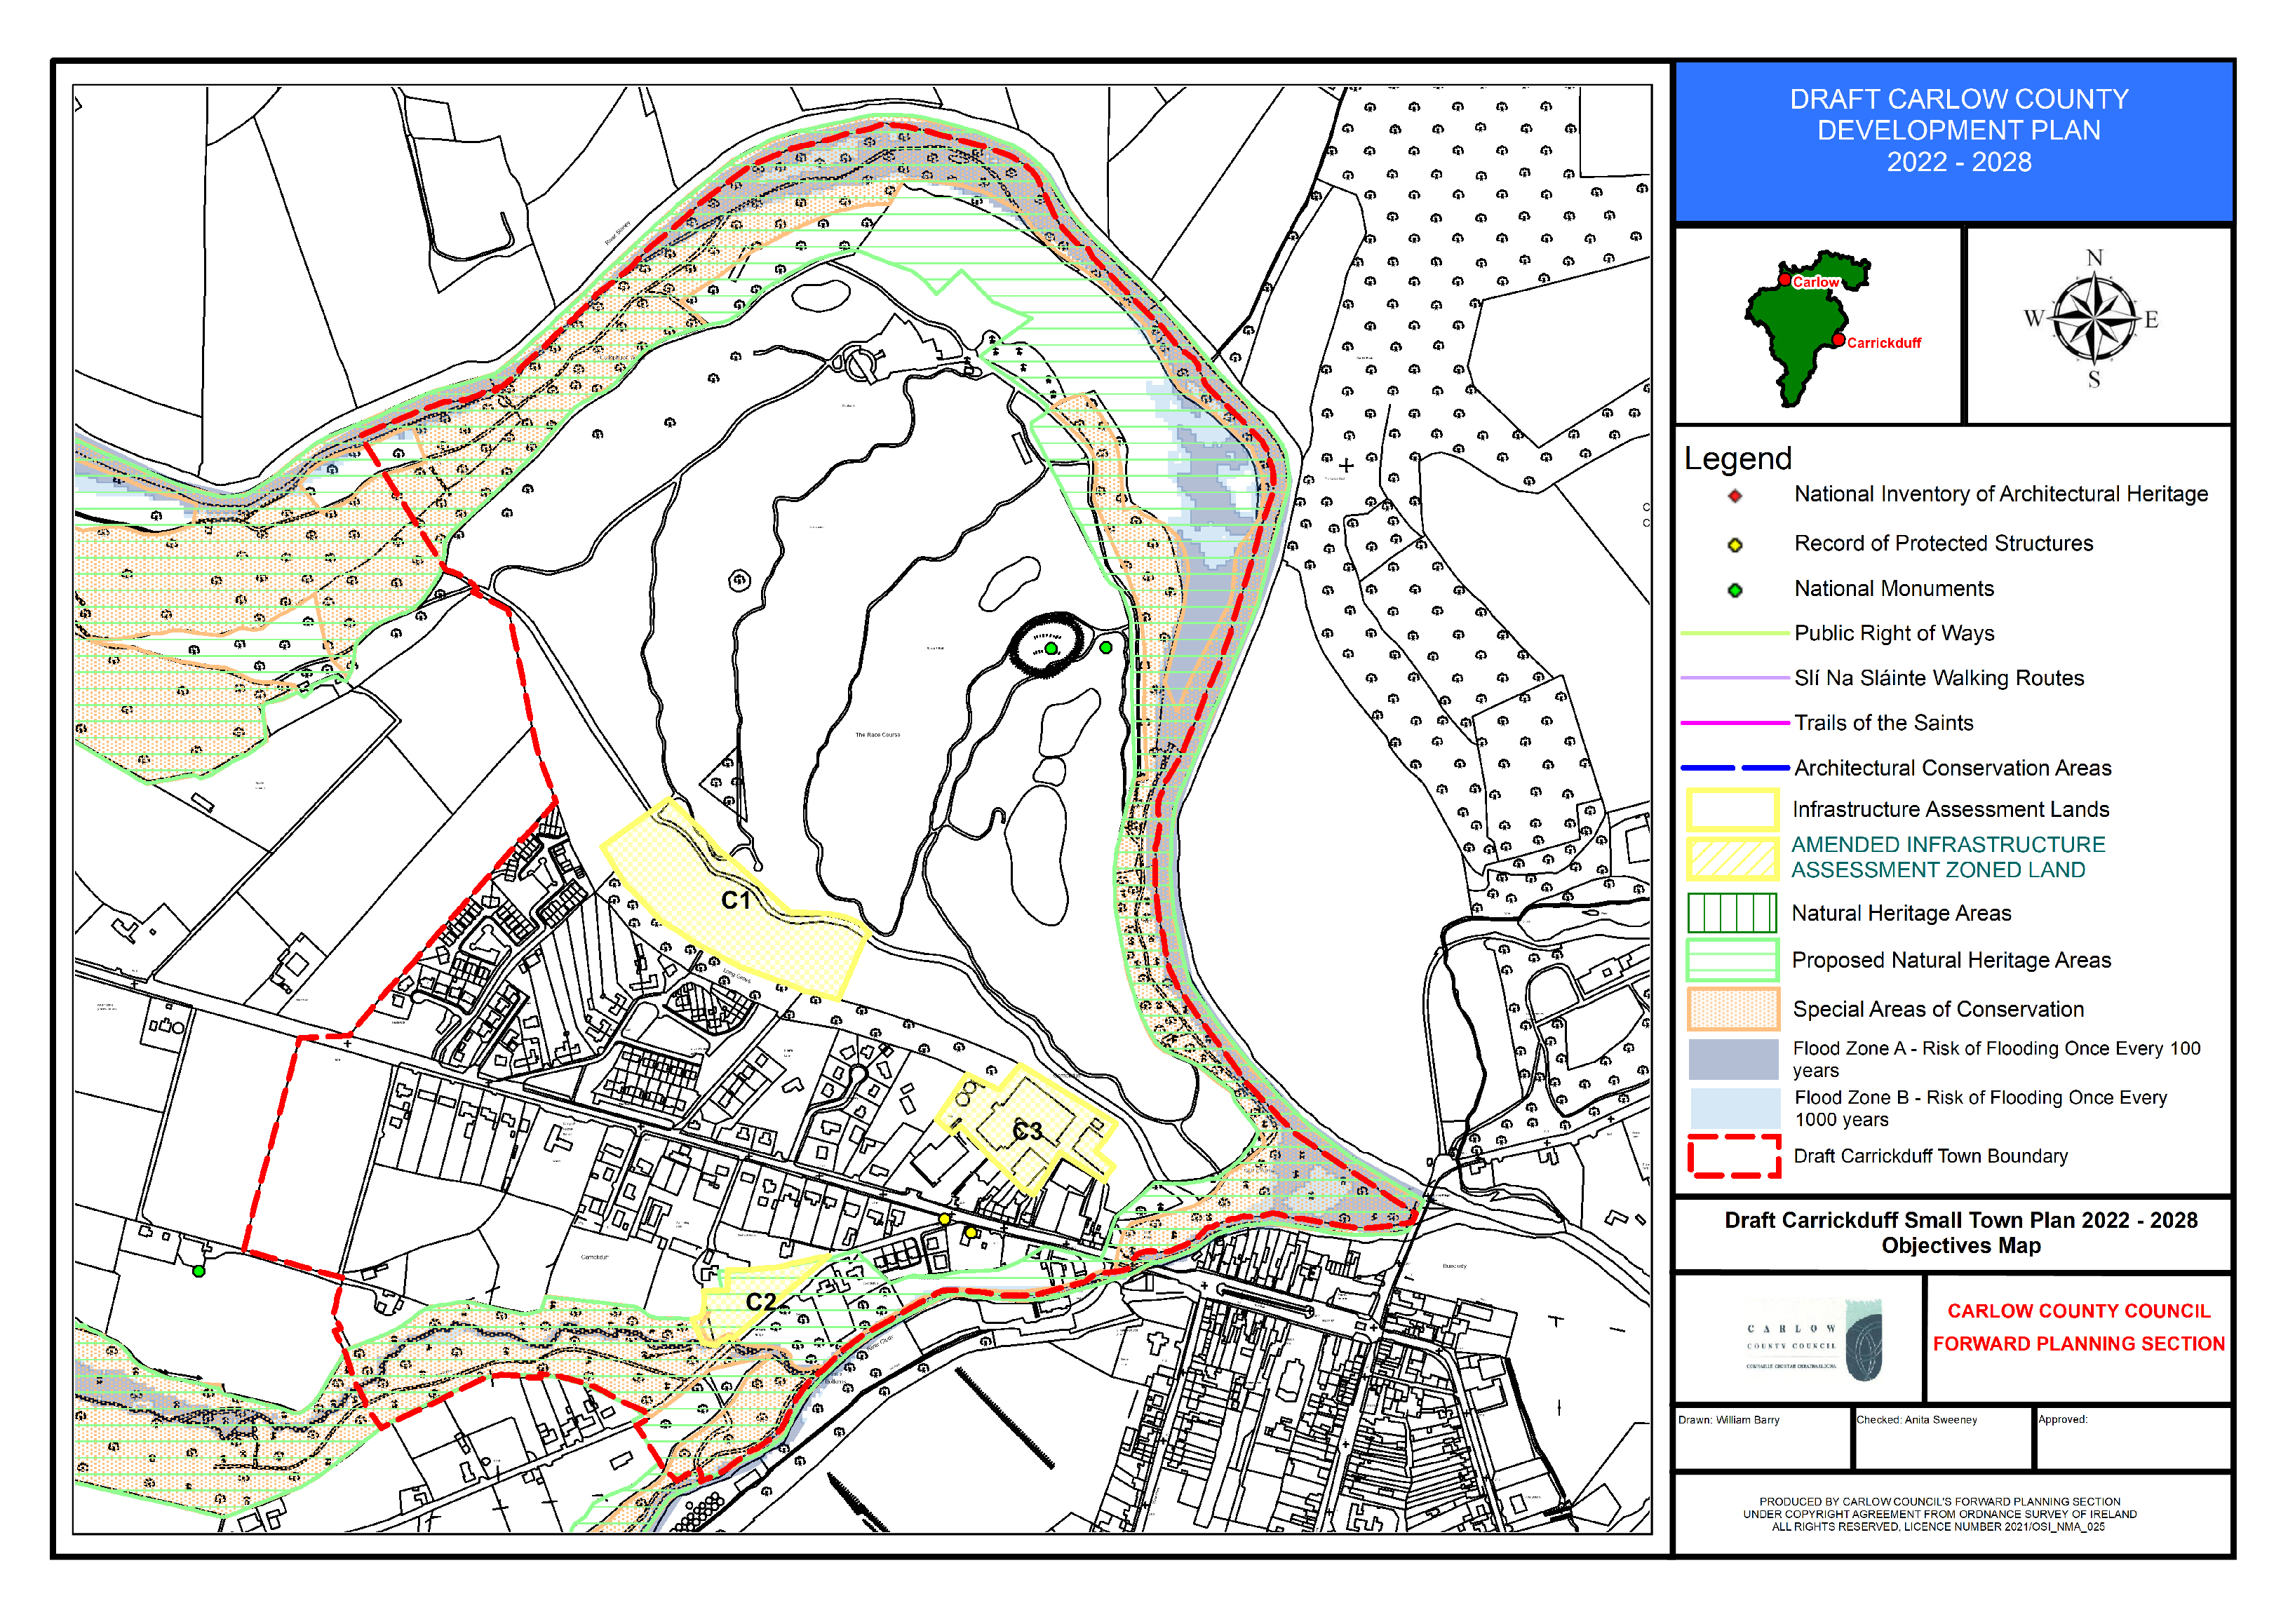 Draft Carrickduff Small Town Plan 2022-2028